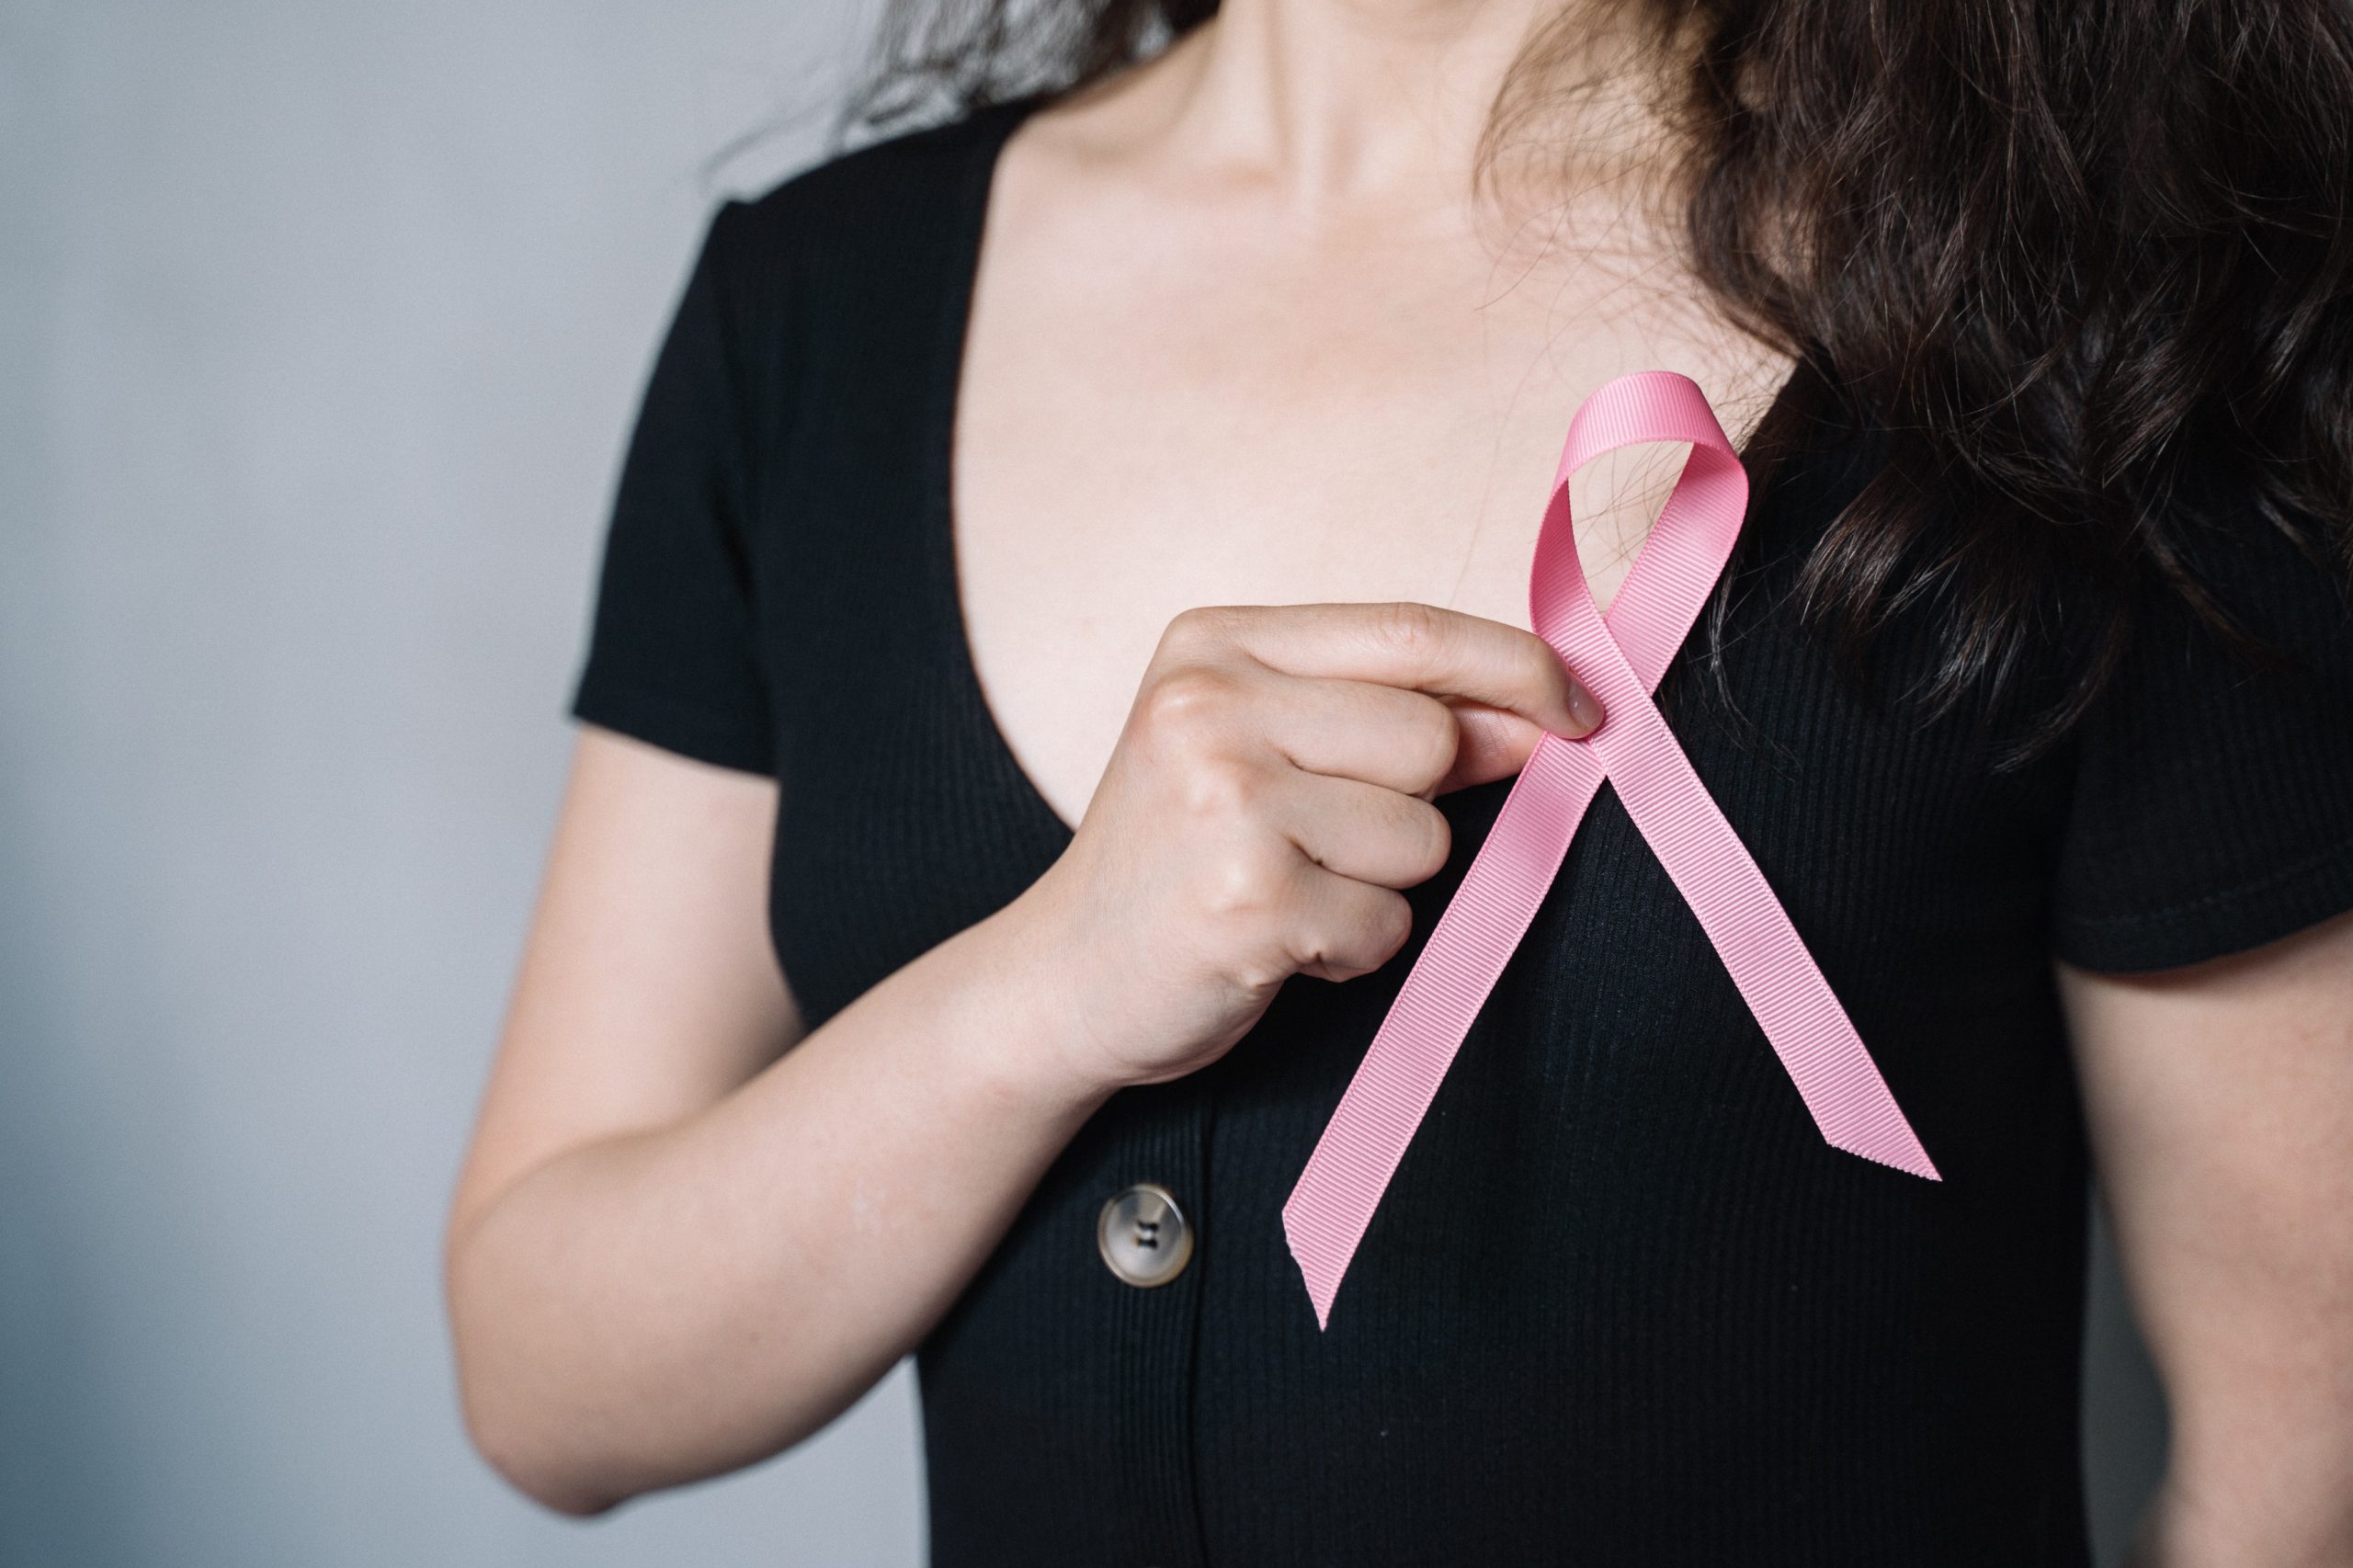 Mujeres latinas tienen 25% más riesgo de sufrir cáncer de mama y ovario